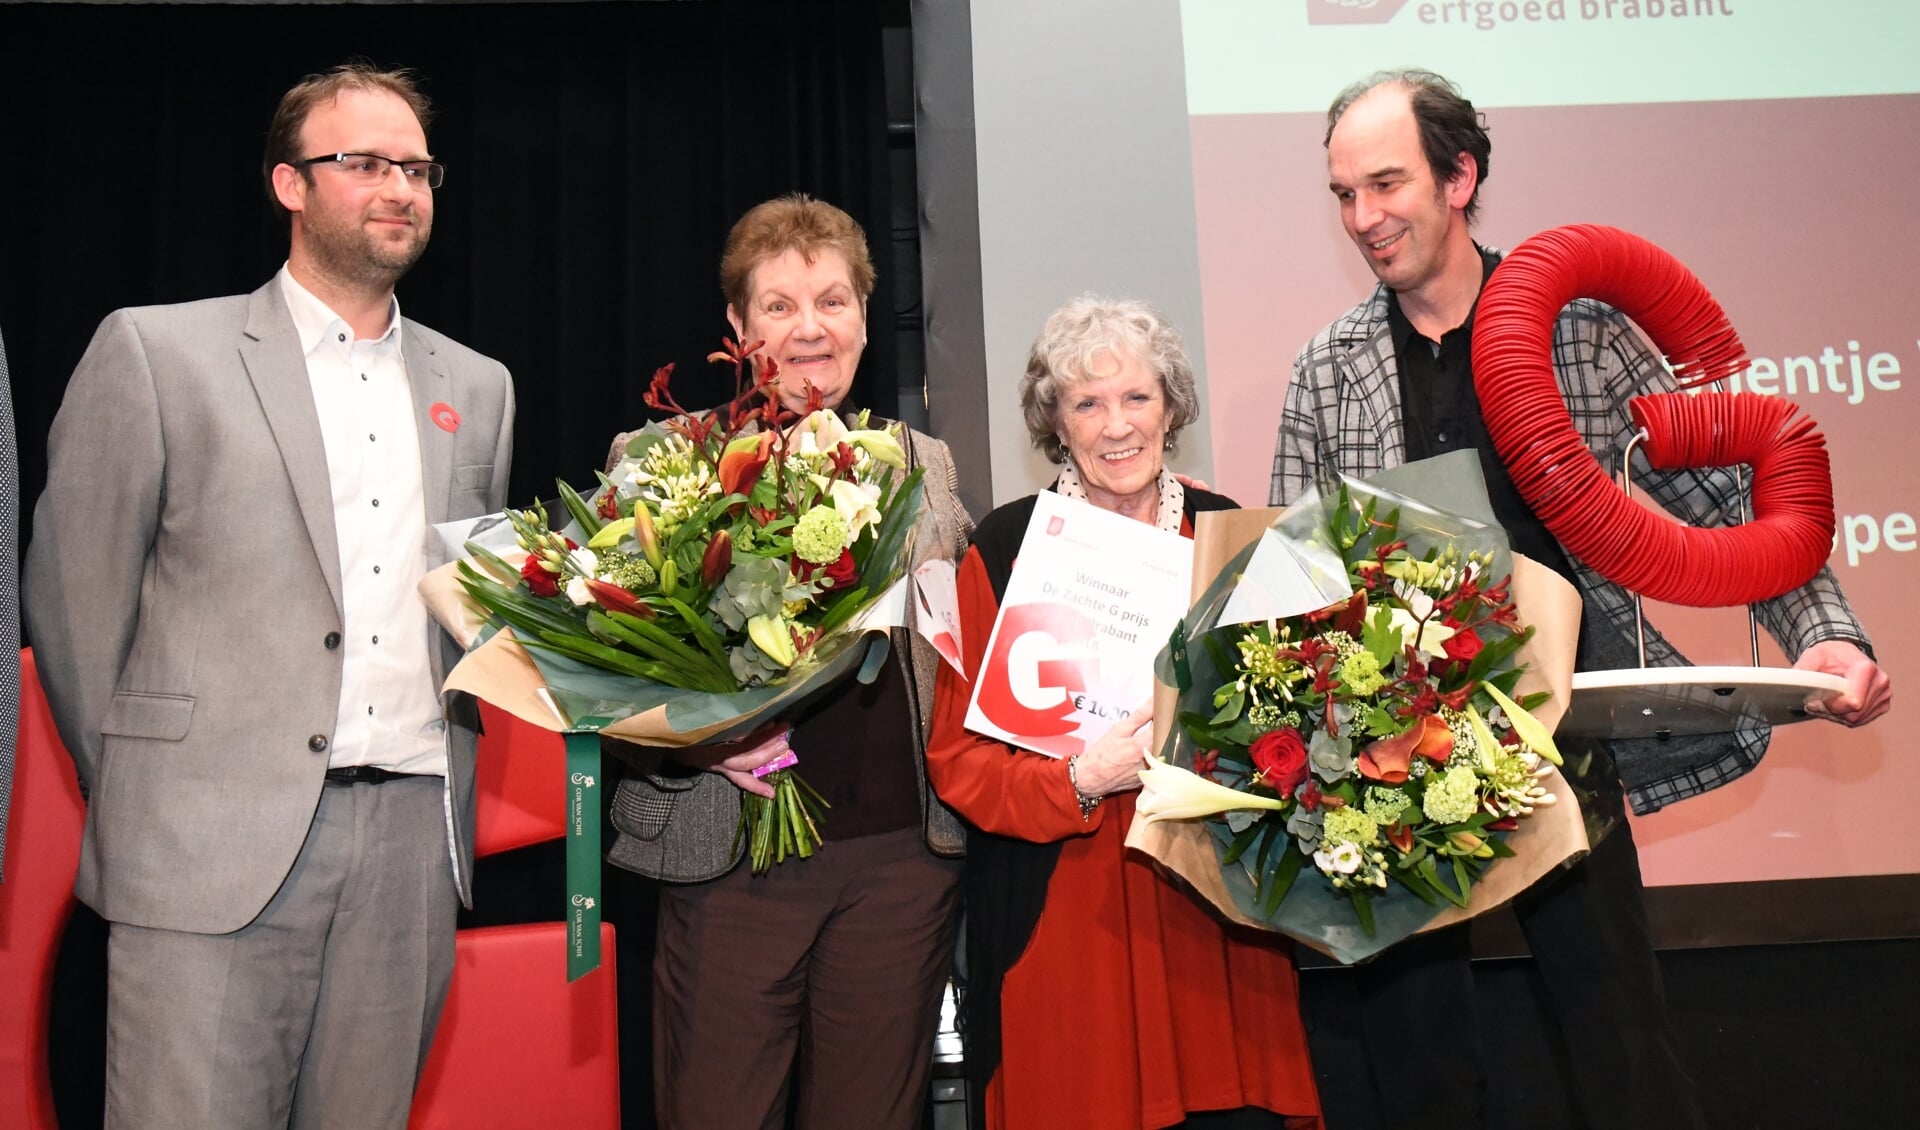 De vorige winnaars: Mientje Wever en Adri Hoppenbrouwers. (Foto: Frans van den Bogaard)